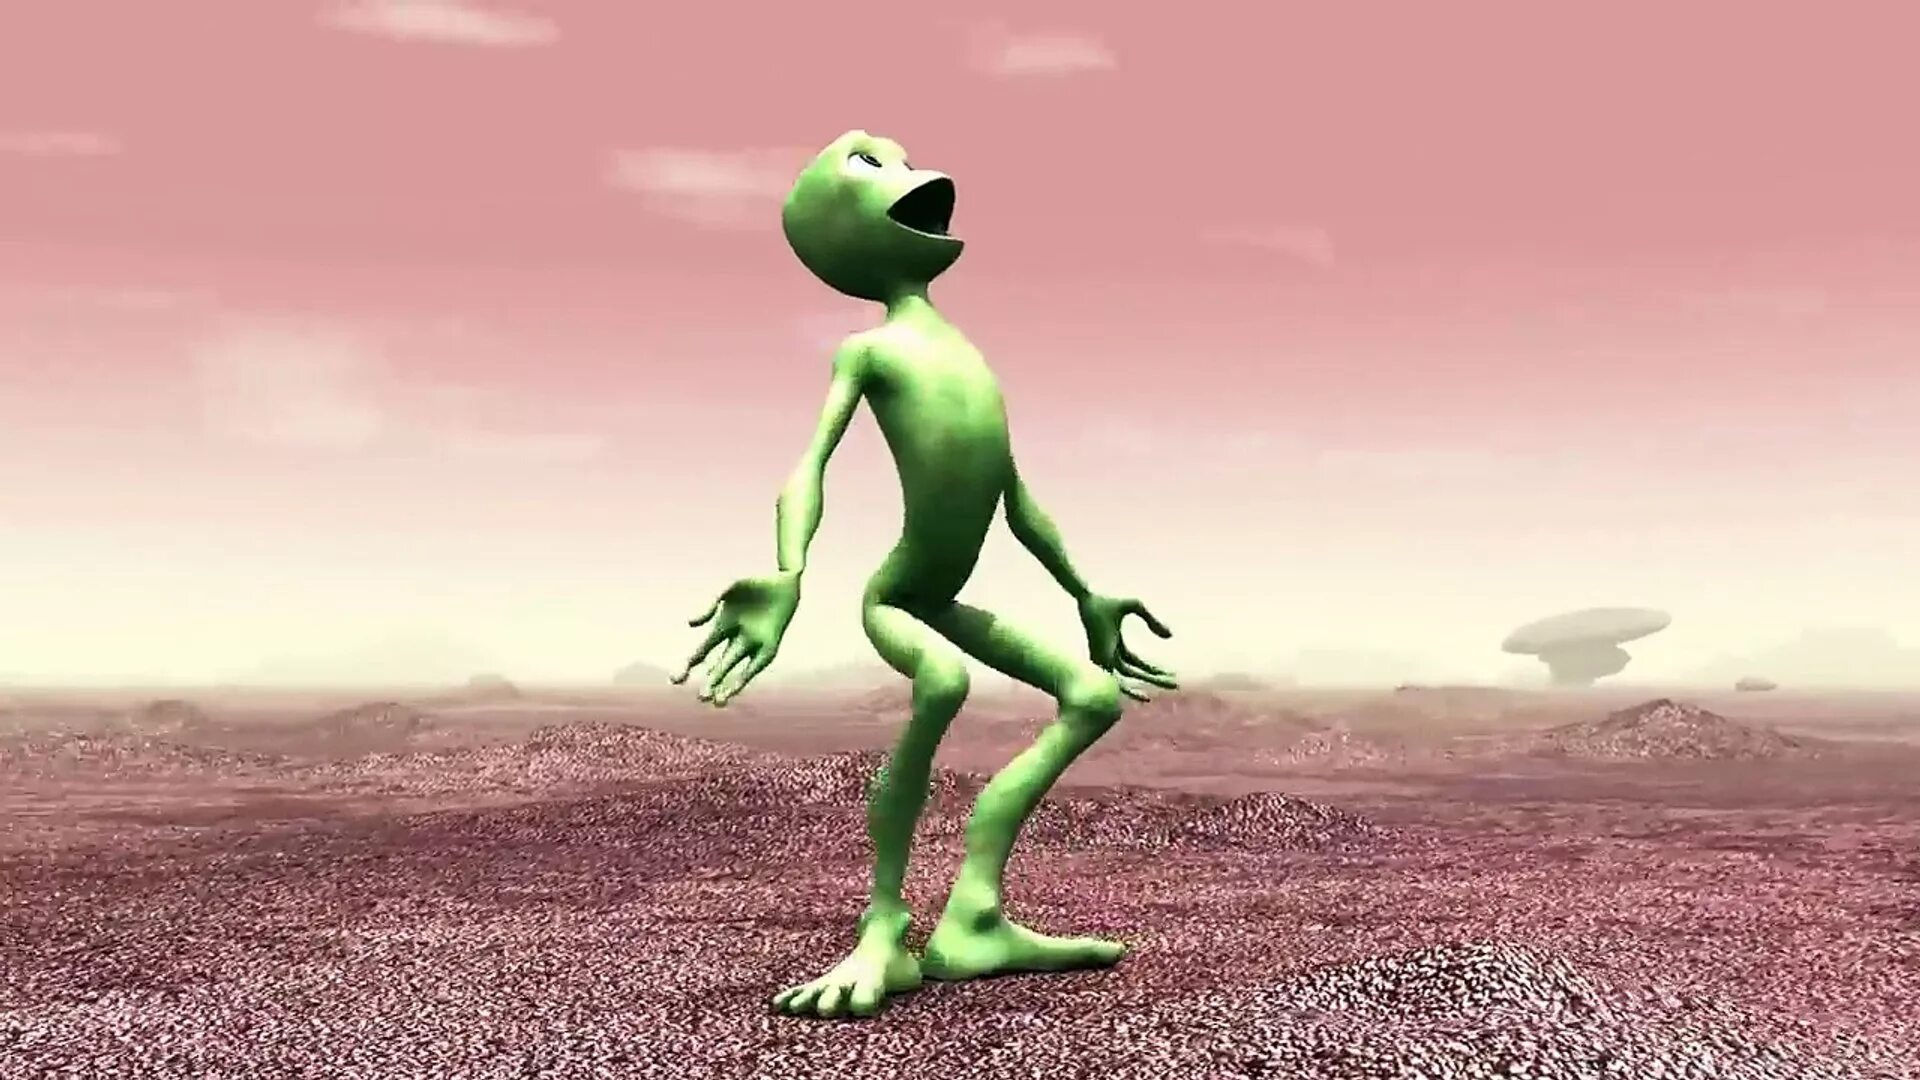 Cutty ranks cosita. Тамито косито. Зеленые человечки. Танцующий зеленый человечек инопланетянин. Танцующий зеленый пришелец.